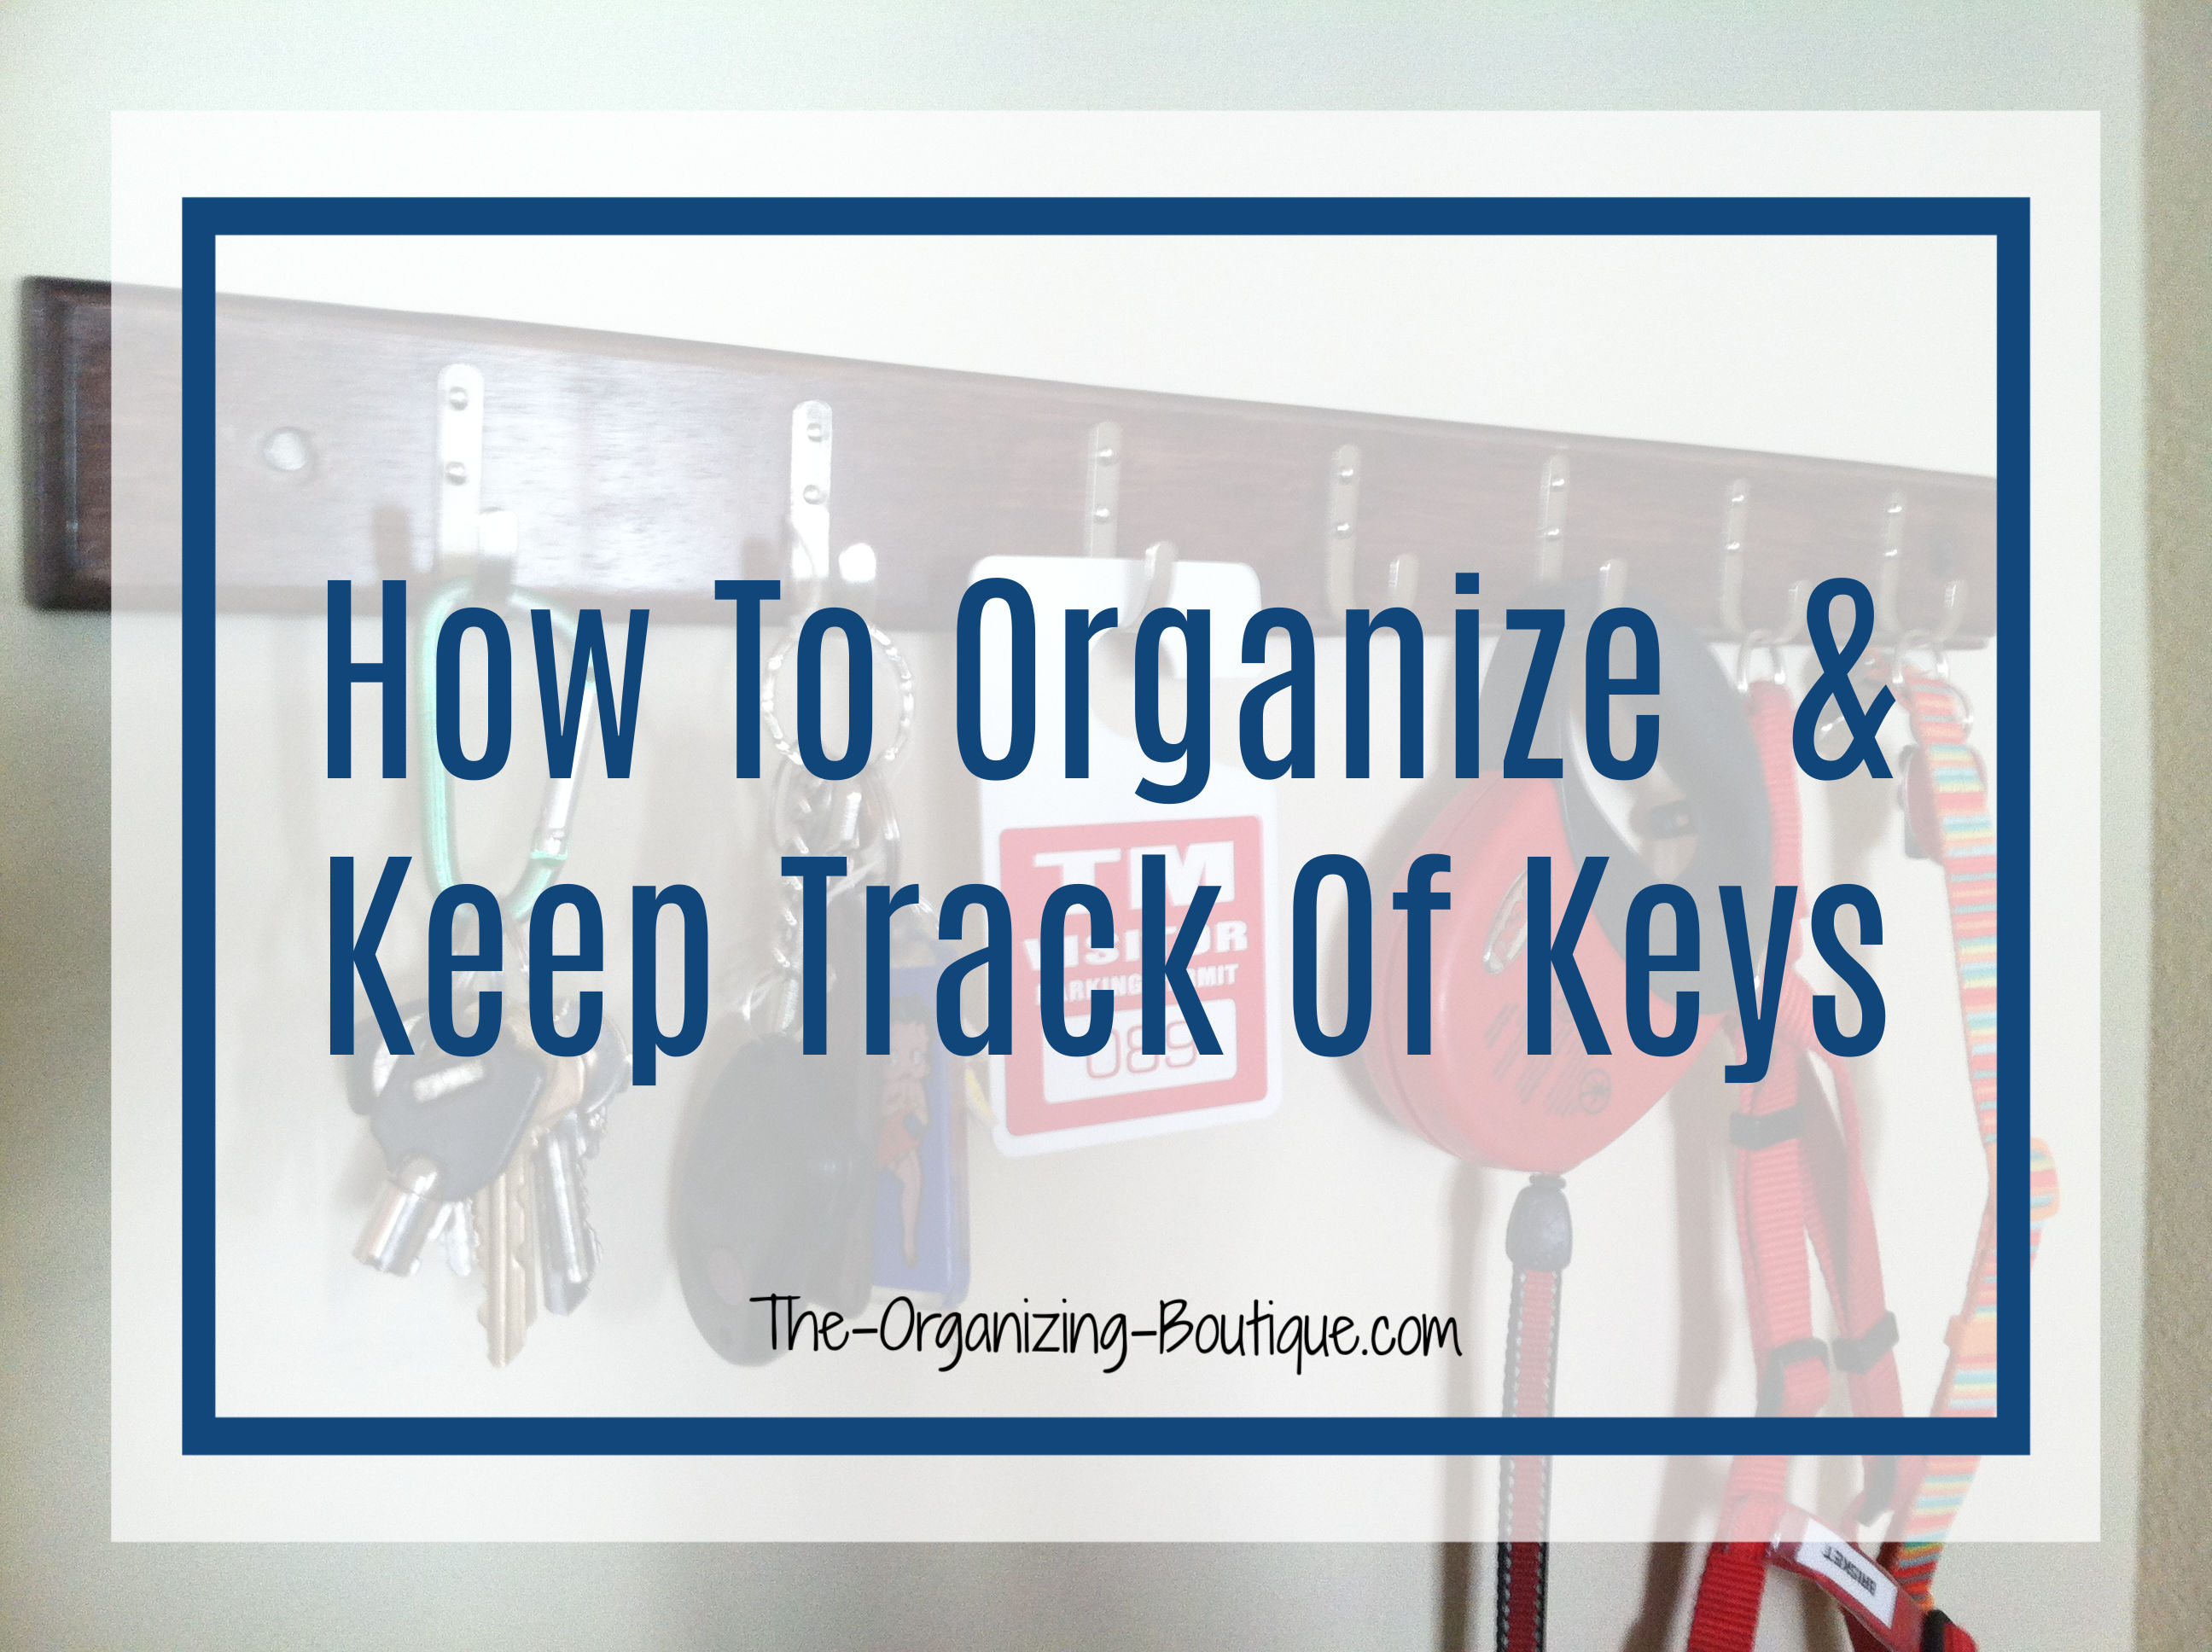 Organize Key Title